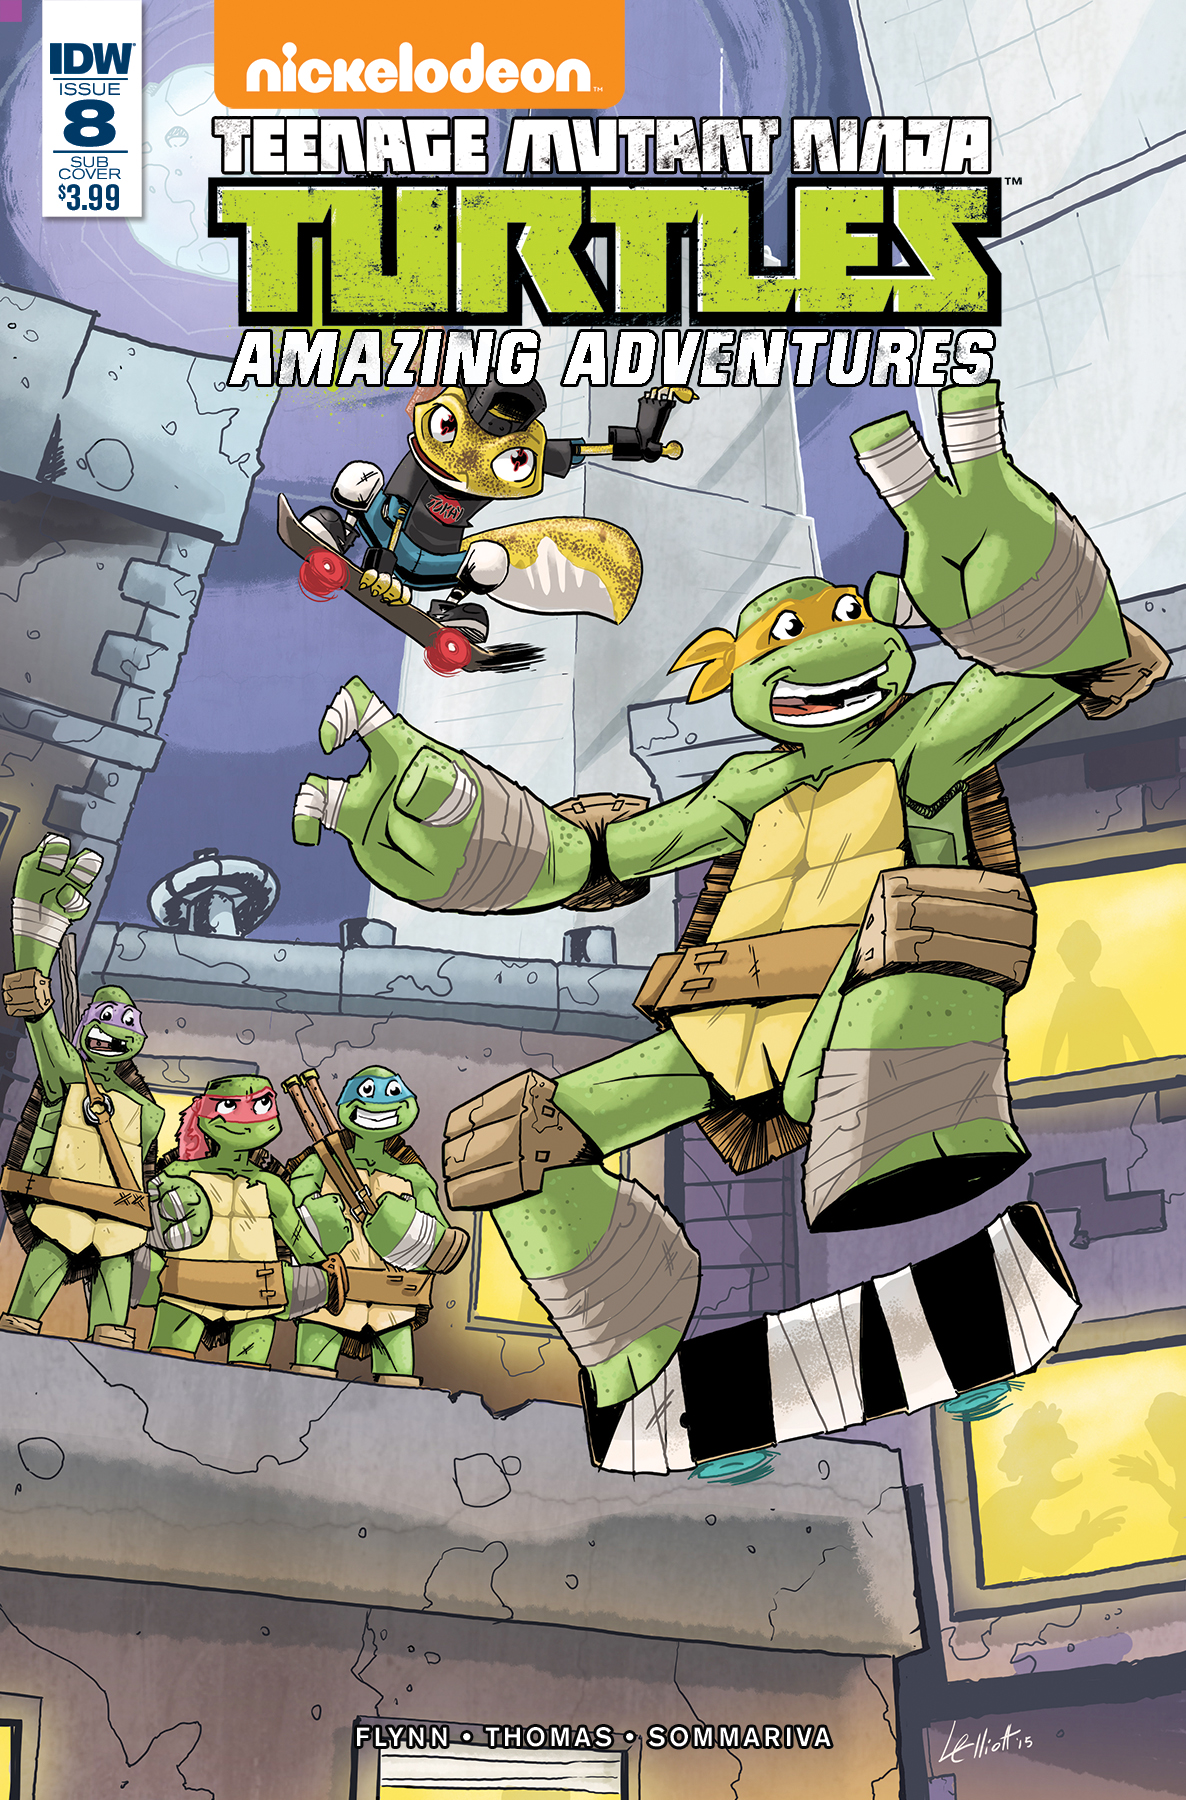 Teenage Mutant Ninja Turtles: Amazing Adventures #8 Cover